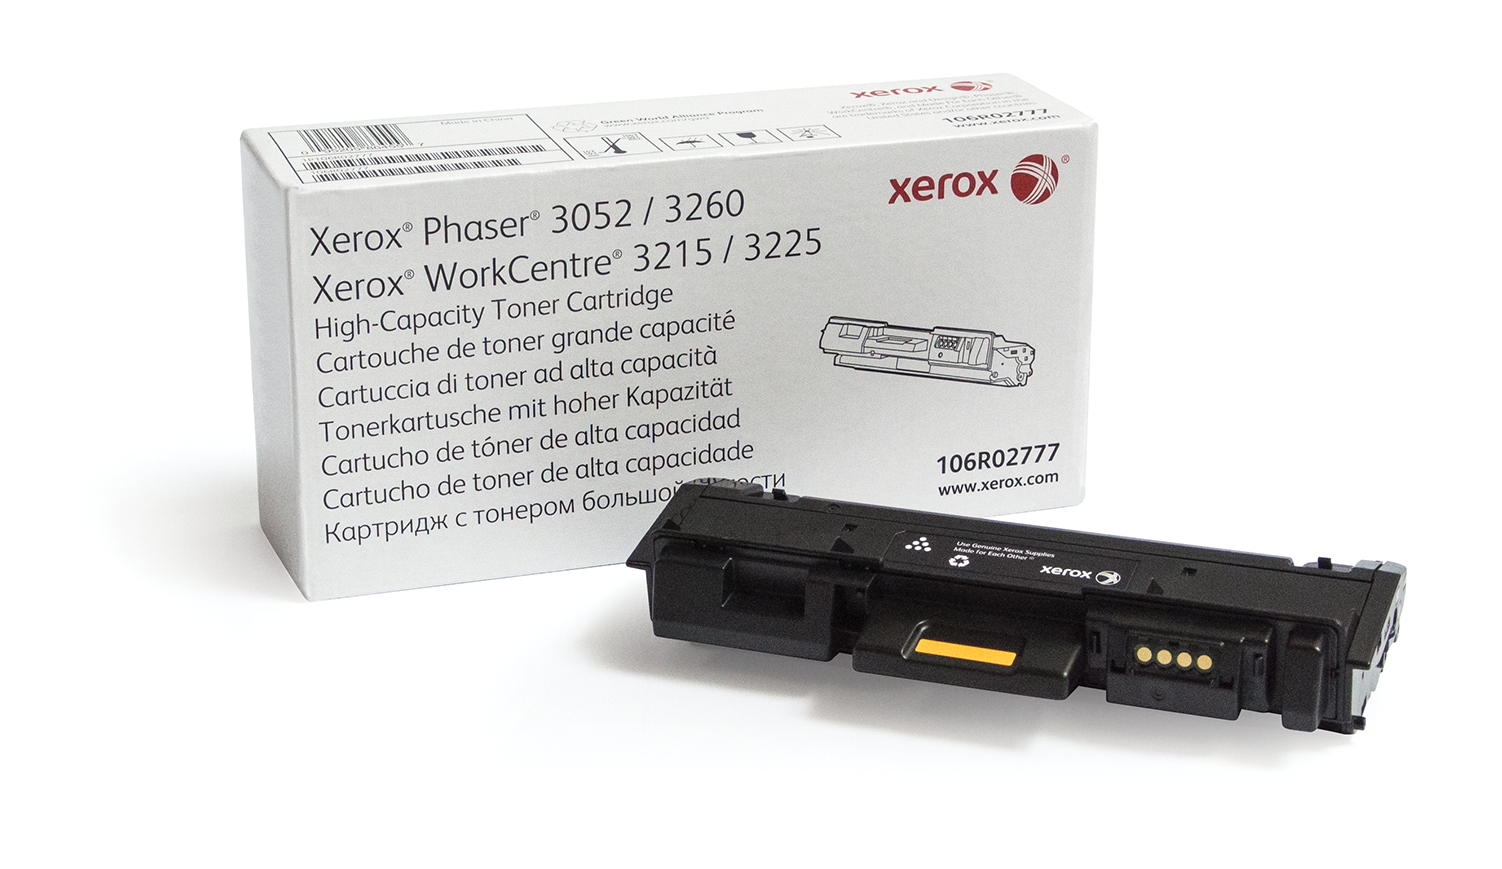 Phaser 3260 WorkCentre 3225 Cartucho tóner NEGRO gran capacidad (3000 págs)  106R02777 Genuine Xerox Supplies